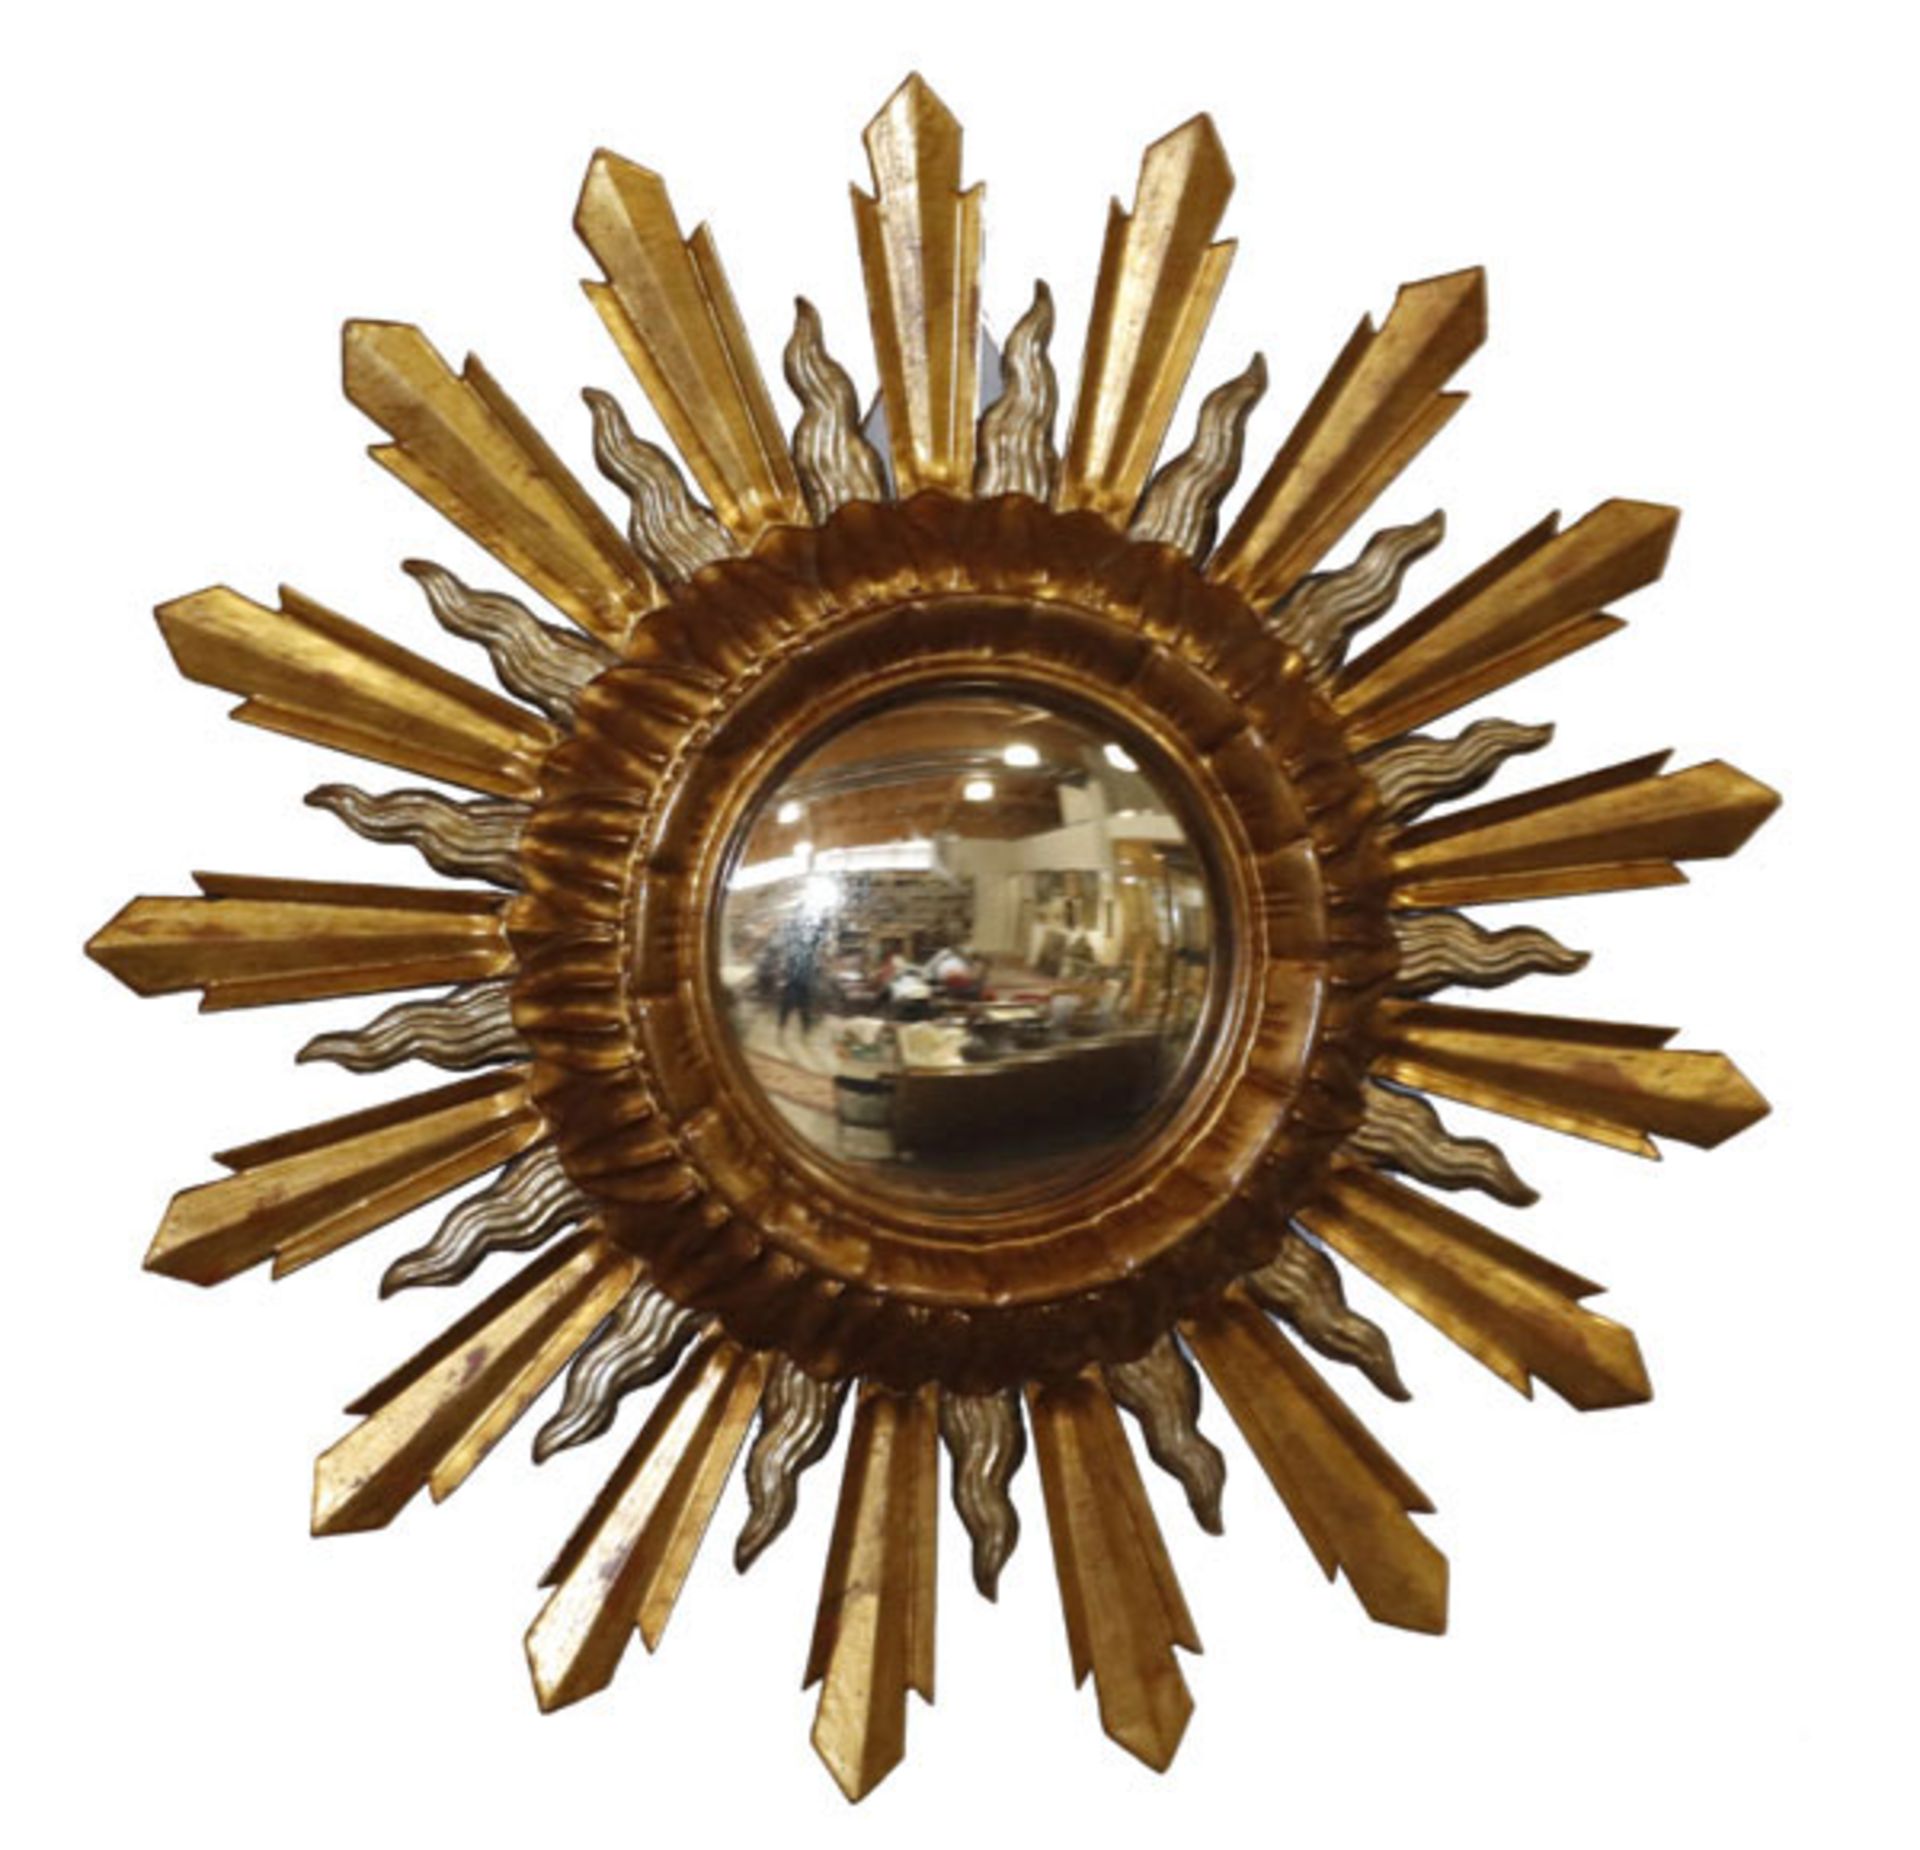 Holz Strahlenkranz, gold gefaßt mit gewölbtem Spiegel, D 70 cm, teils bestossen